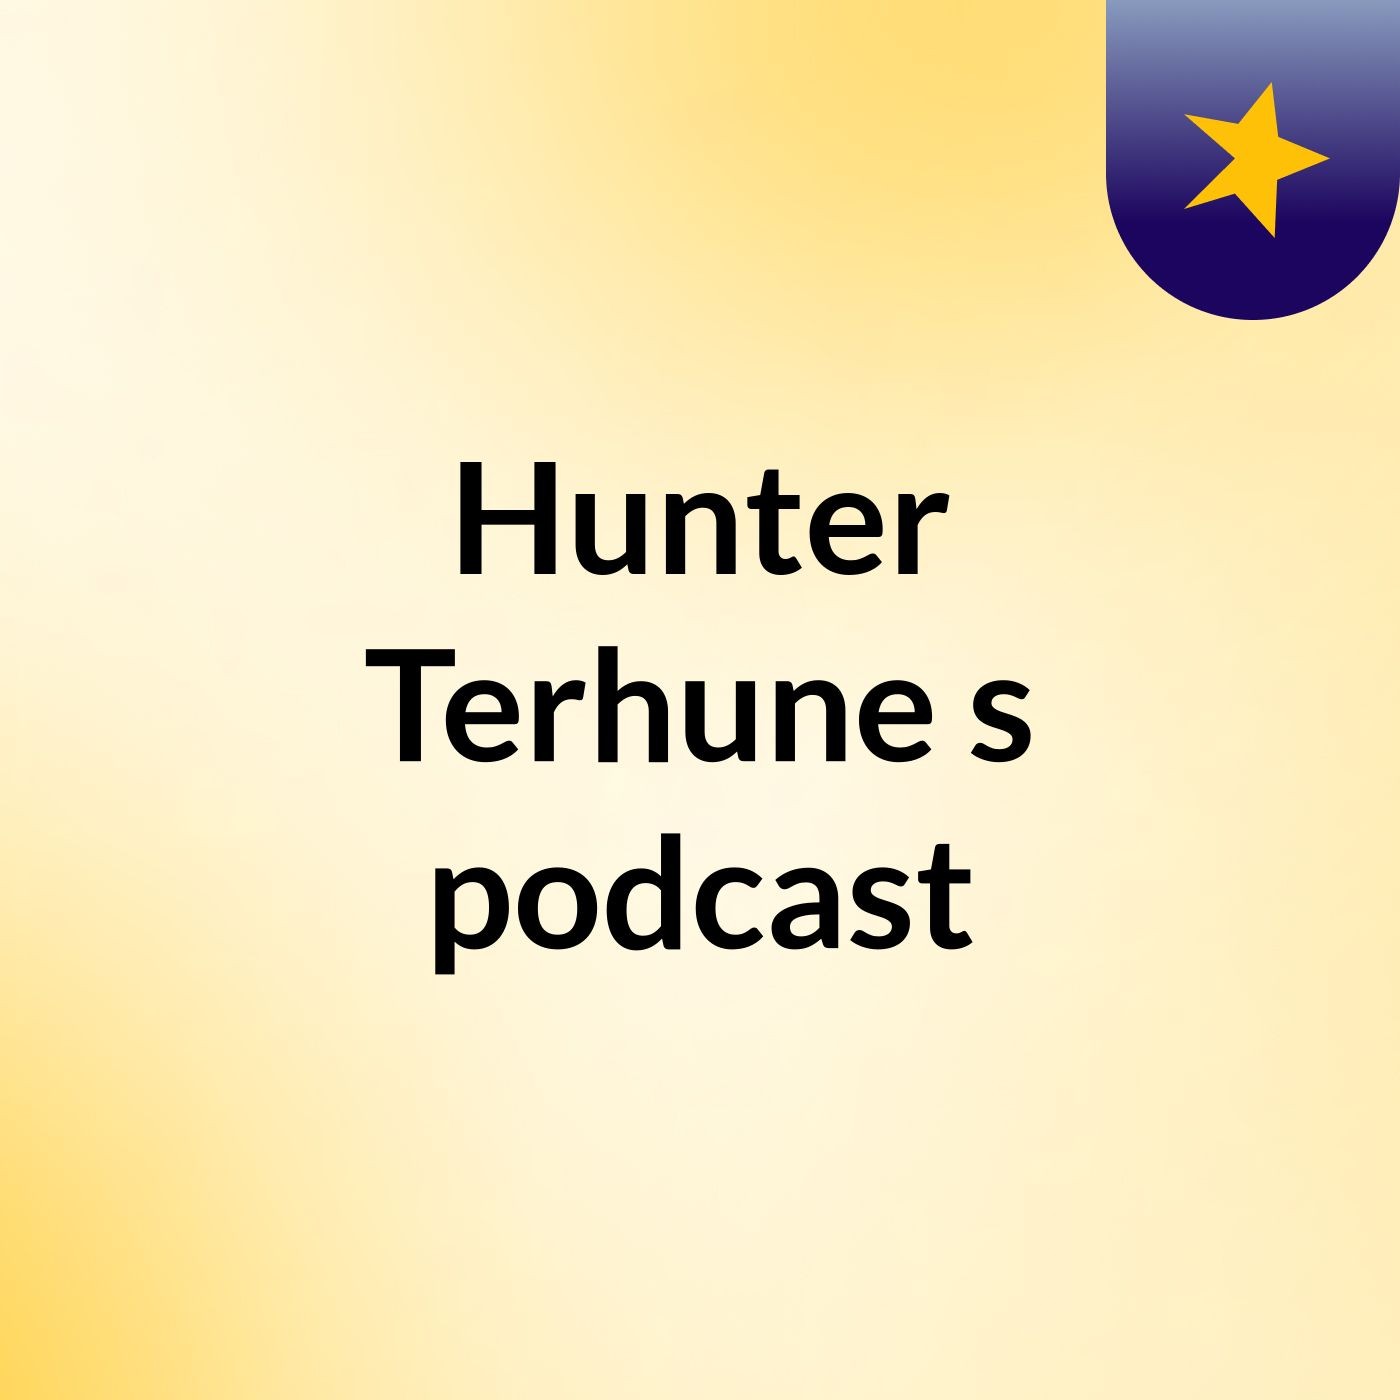 Hunter Terhune's podcast